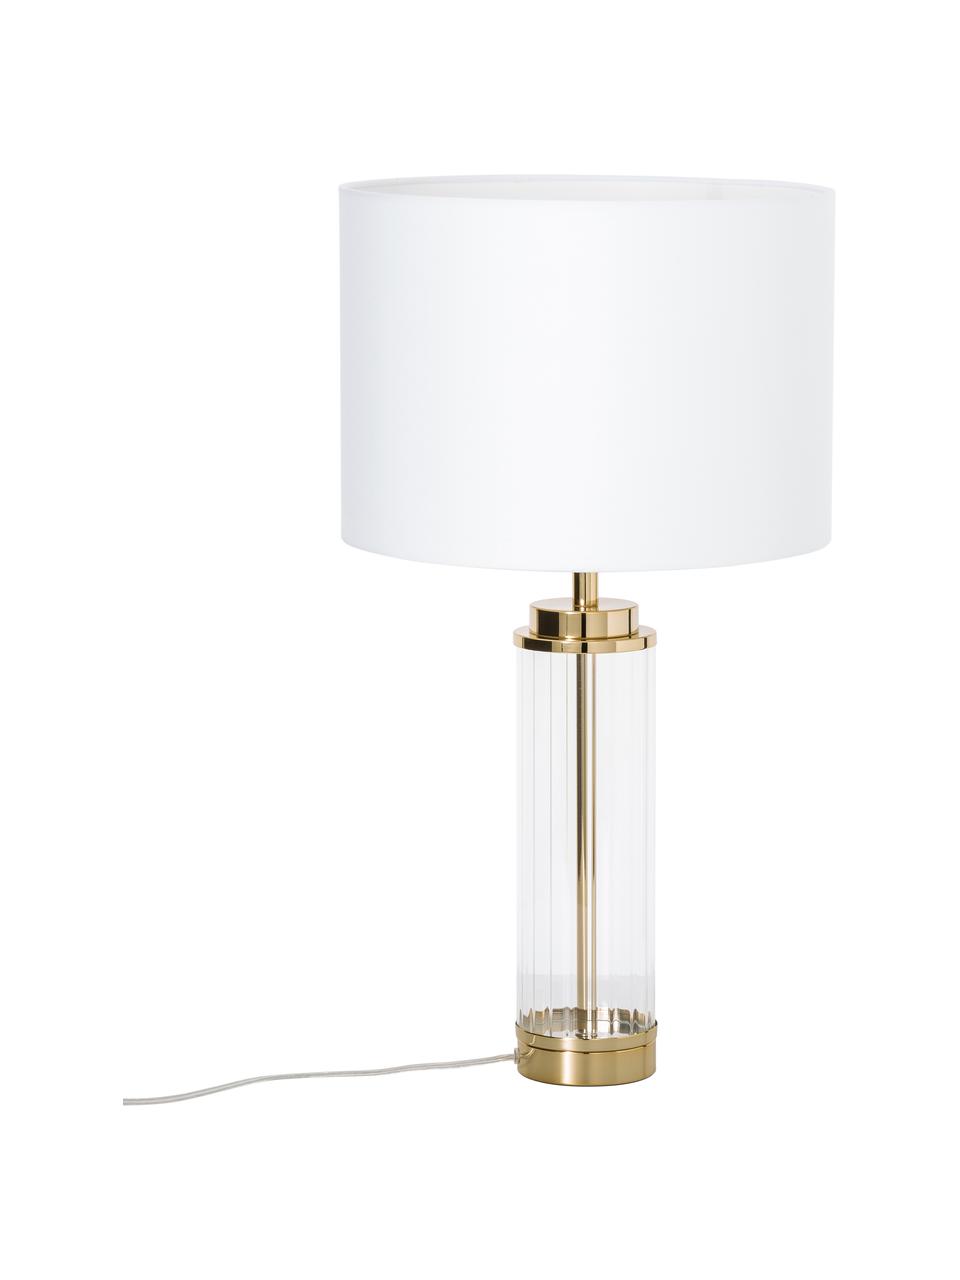 Grosse Glam-Tischlampe Gabor mit Glasfuss, Lampenschirm: Textil, Creme, Goldfarben, Ø 35 x H 64 cm